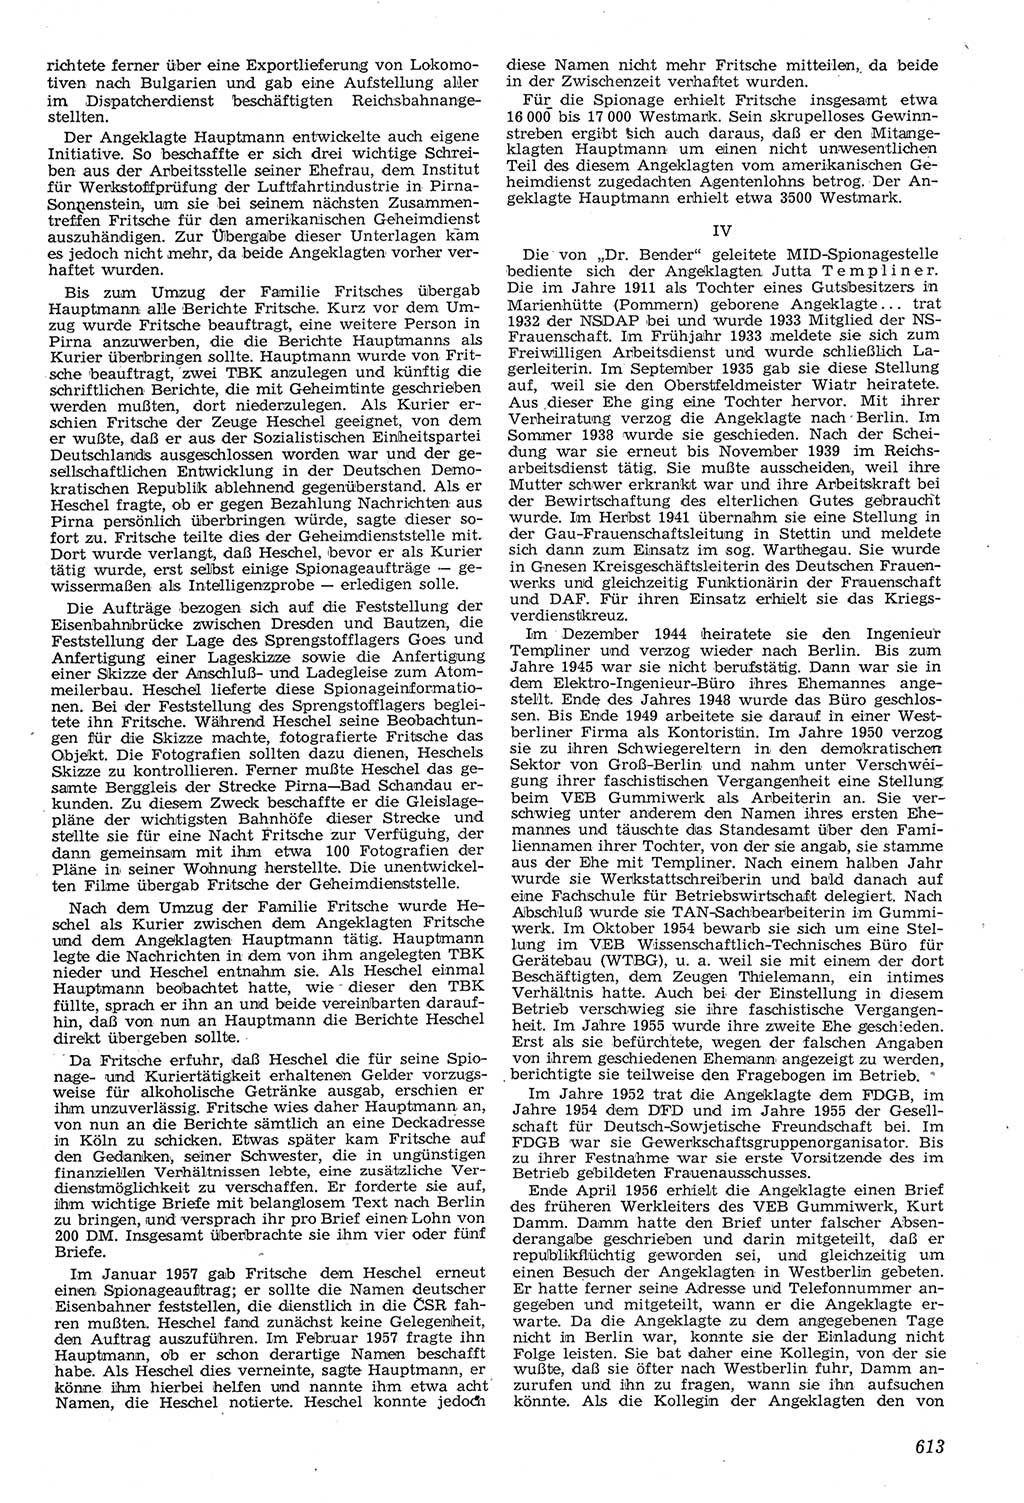 Neue Justiz (NJ), Zeitschrift für Recht und Rechtswissenschaft [Deutsche Demokratische Republik (DDR)], 11. Jahrgang 1957, Seite 613 (NJ DDR 1957, S. 613)